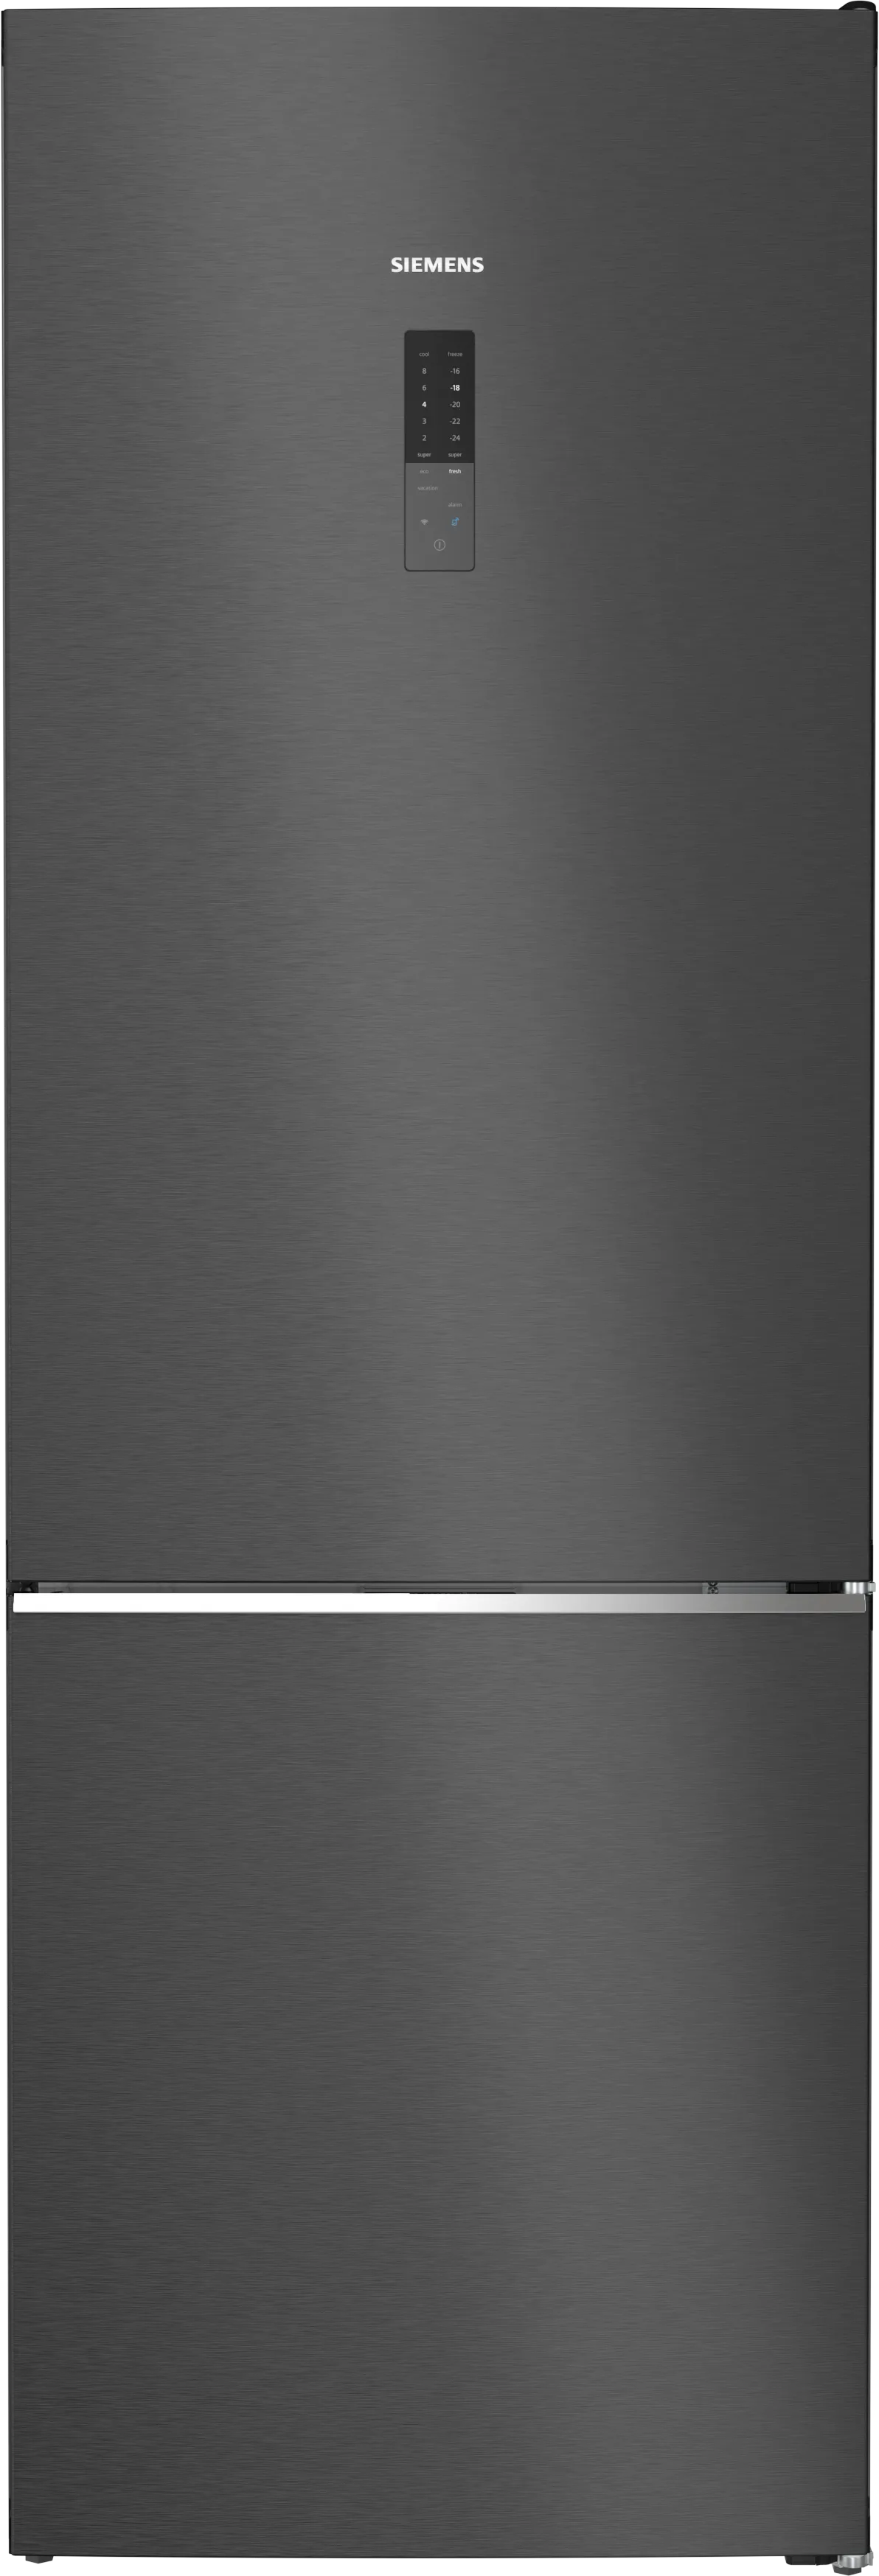 iQ500 Vrijstaande koel-vriescombinatie met bottom-freezer 203 x 70 cm Zwart geborsteld staal antiFingerprint 